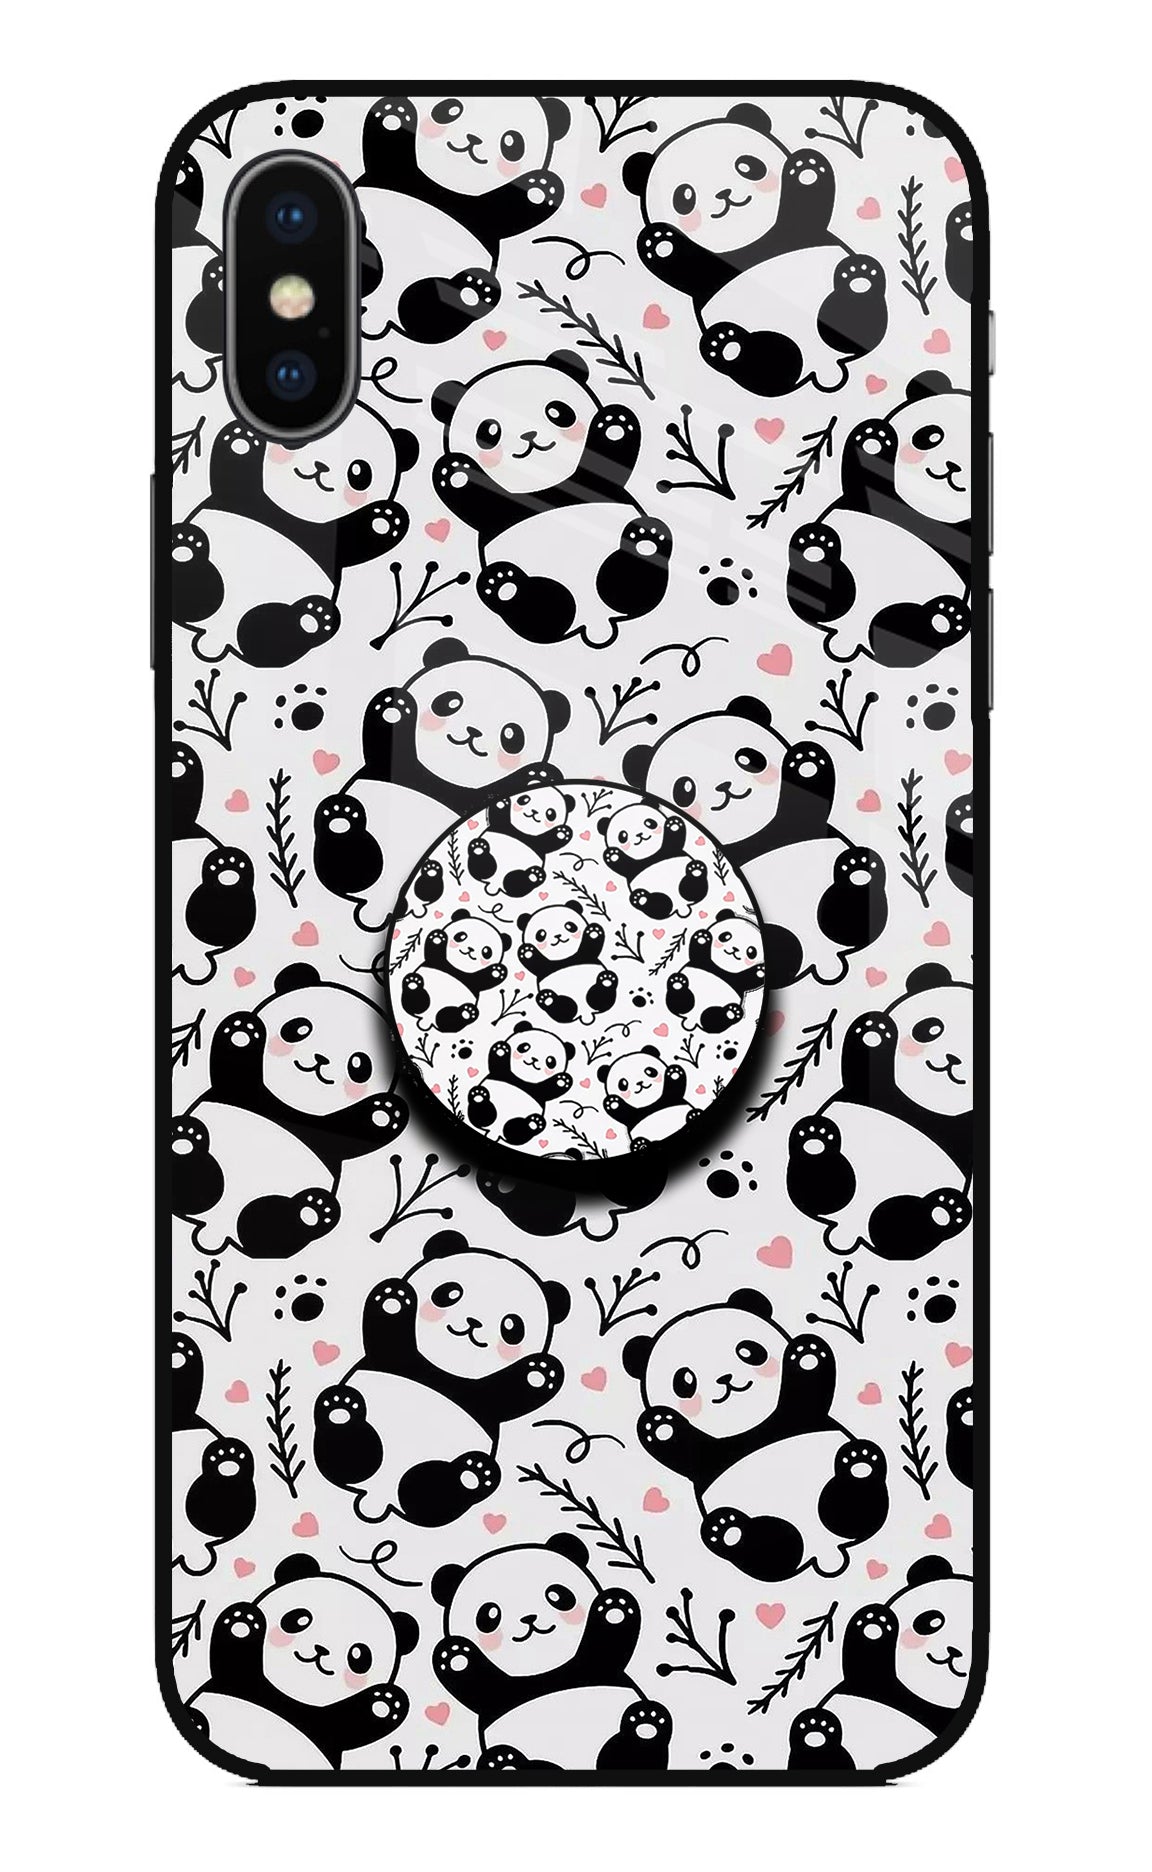 Cute Panda iPhone XS Pop Case